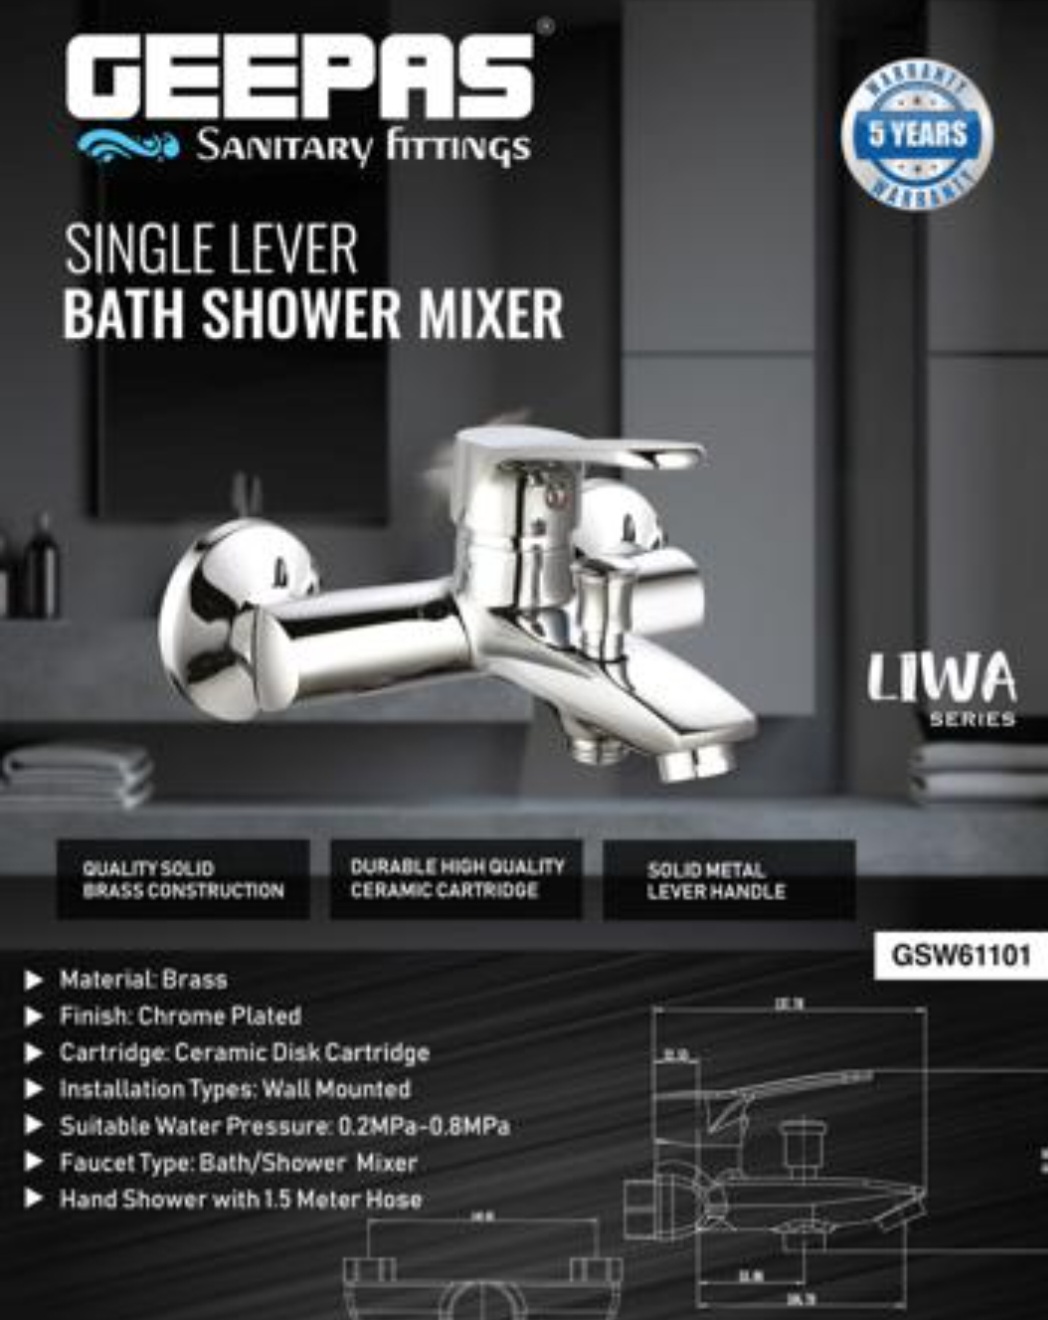 دوش دستی حمام تک کاره جیپاس مدل GSW61101تجهیزات حمام. ارسال رایگان